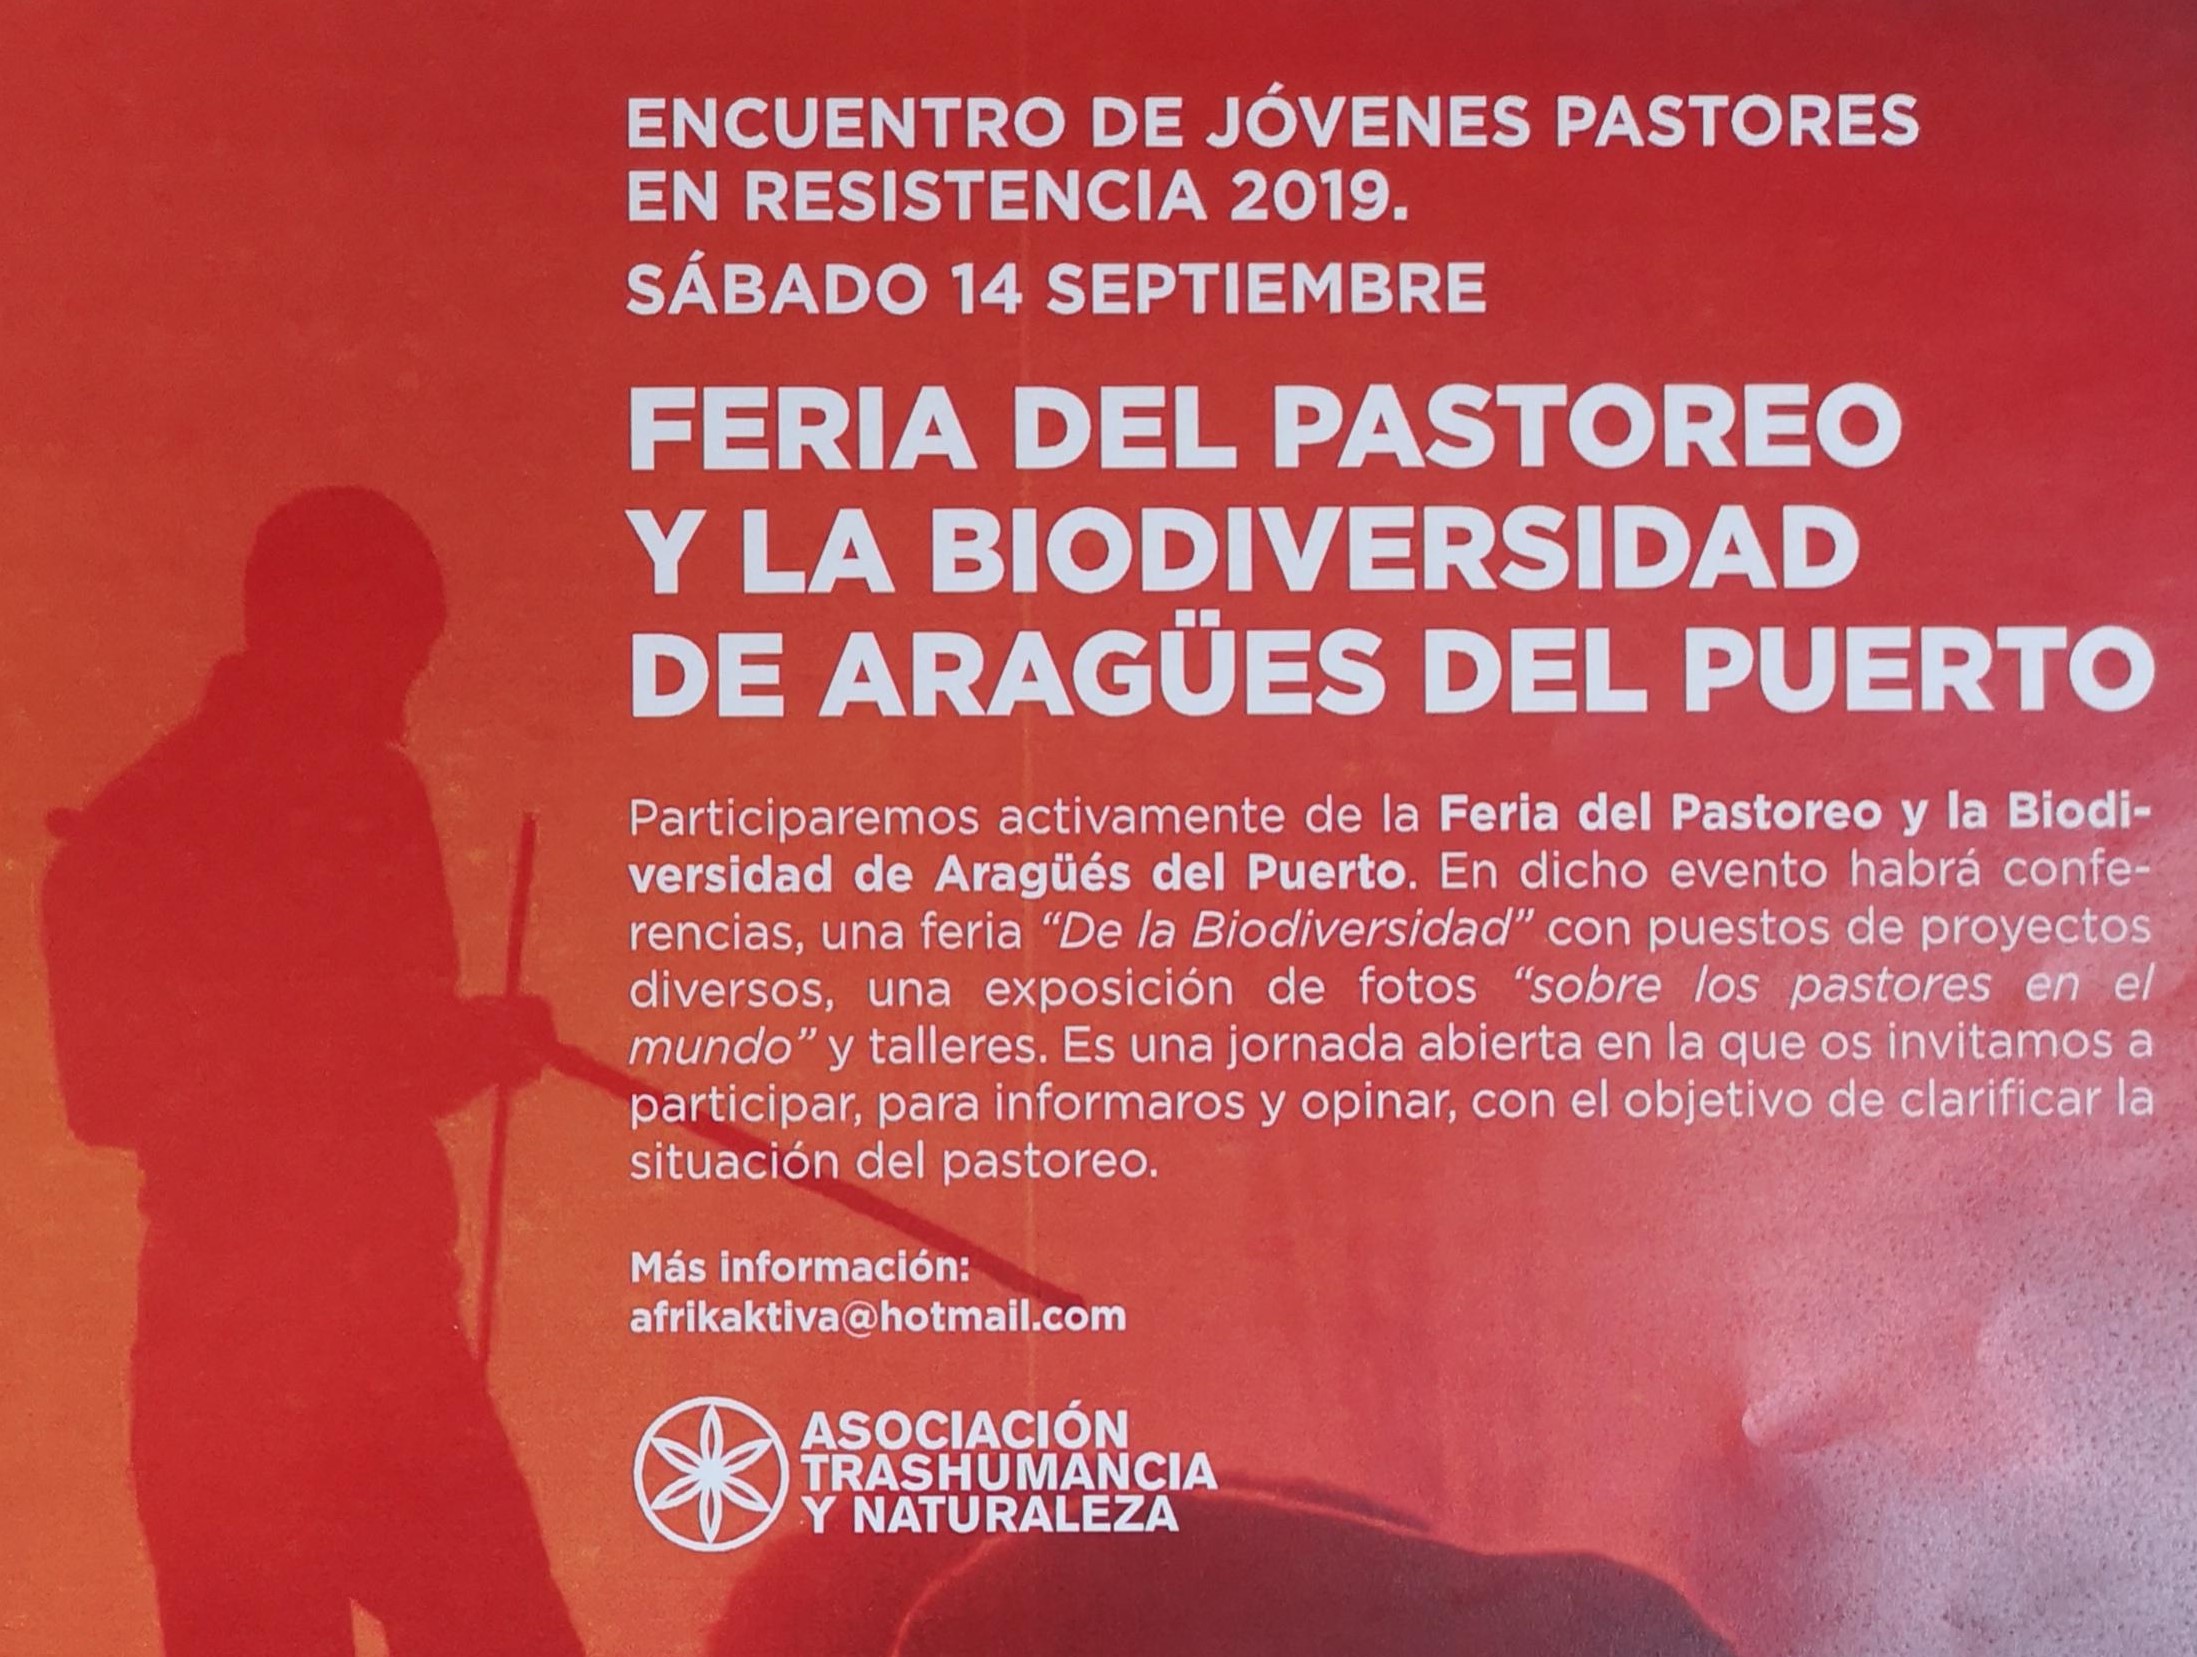 Feria del Pastoreo y la Biodiversidad en Aragüés del Puerto